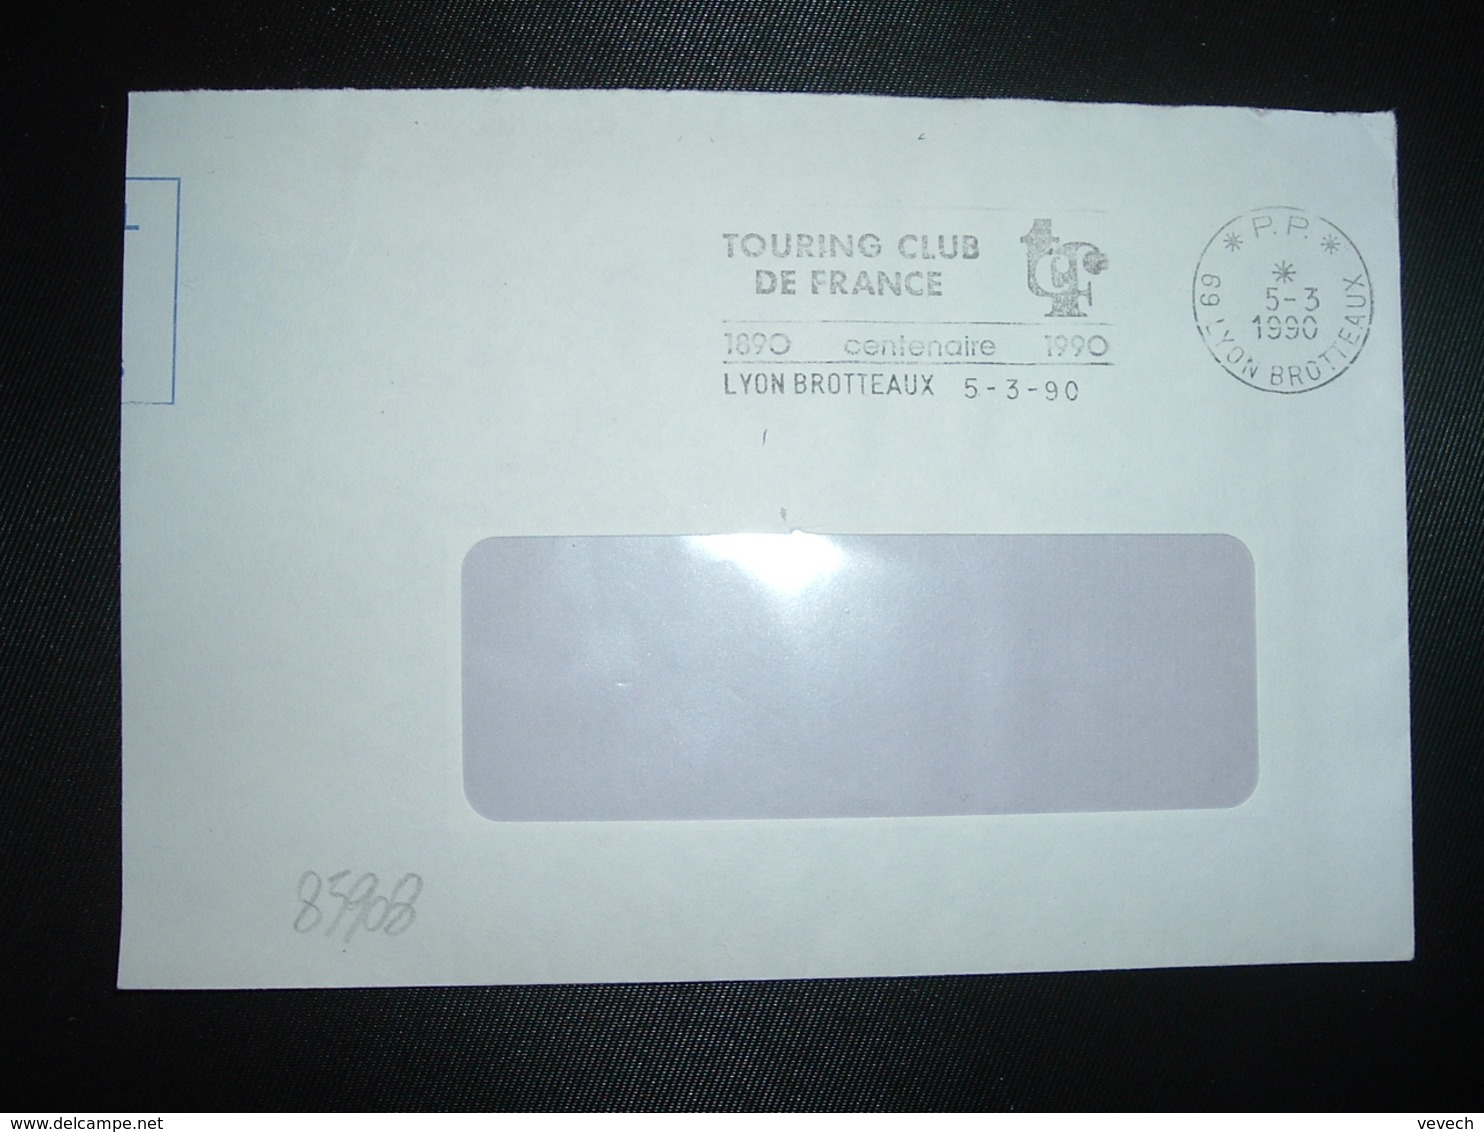 LETTRE PORT PAYE OBL.MEC.5-3 1990 PP 69 LYON BROTTEAUX + TOURING CLUB DE FRANCE - Oblitérations Mécaniques (Autres)